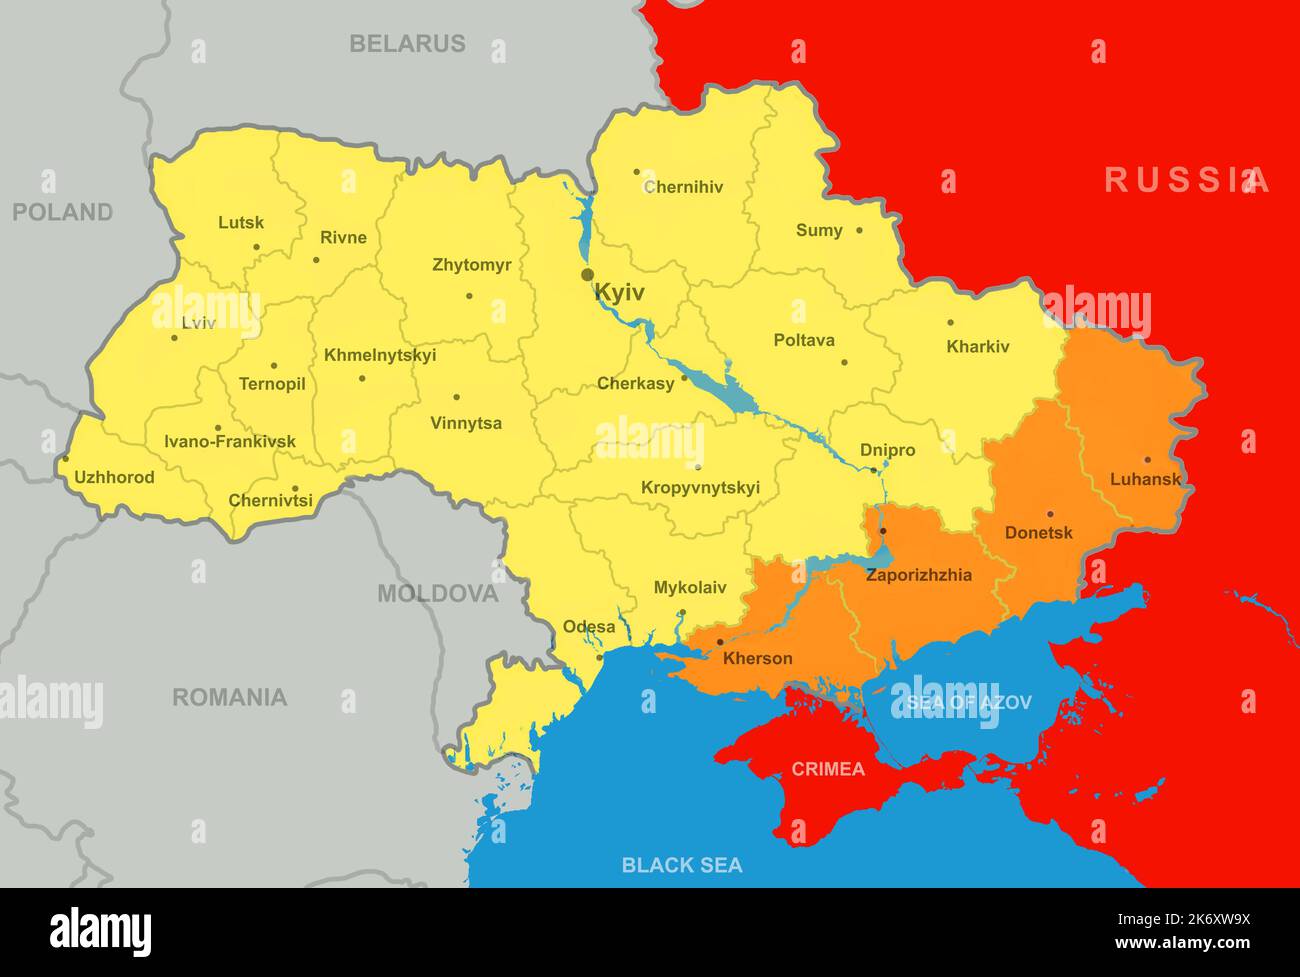 Die Ukraine kariert nach Referenden in den Regionen Donezk, Luhansk, Cherson und Saporischschschja. Sie wurden 2022 durch den russisch-ukrainischen Krieg Teil Russlands. Stockfoto